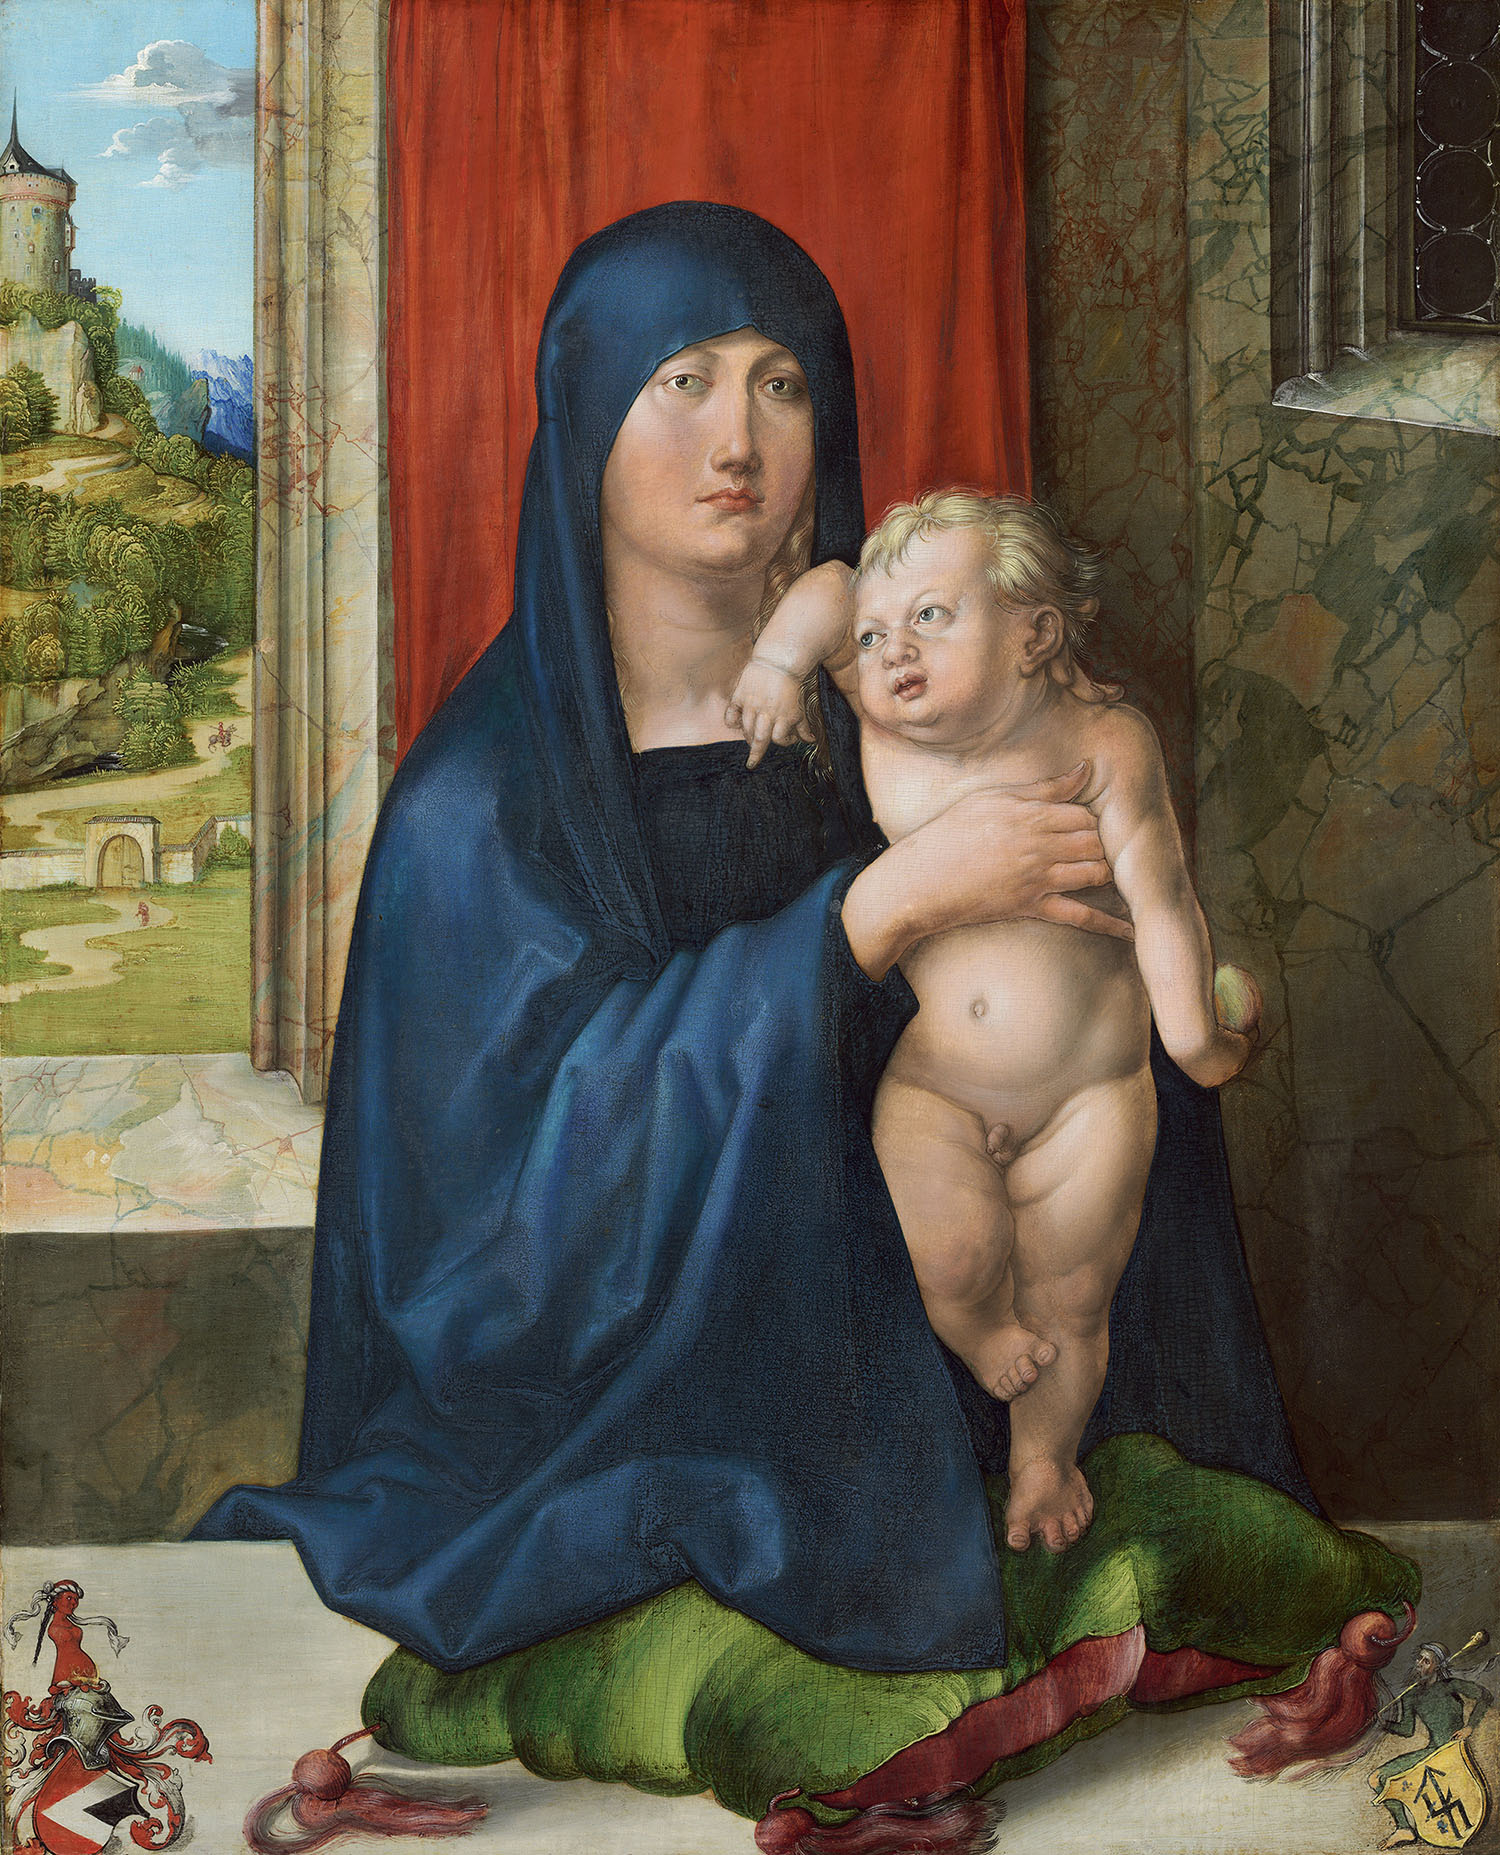 Альбрехт Дюрер. "Мадонна с Младенцем". 1496-1499. Национальная галерея искусств, Вашингтон.